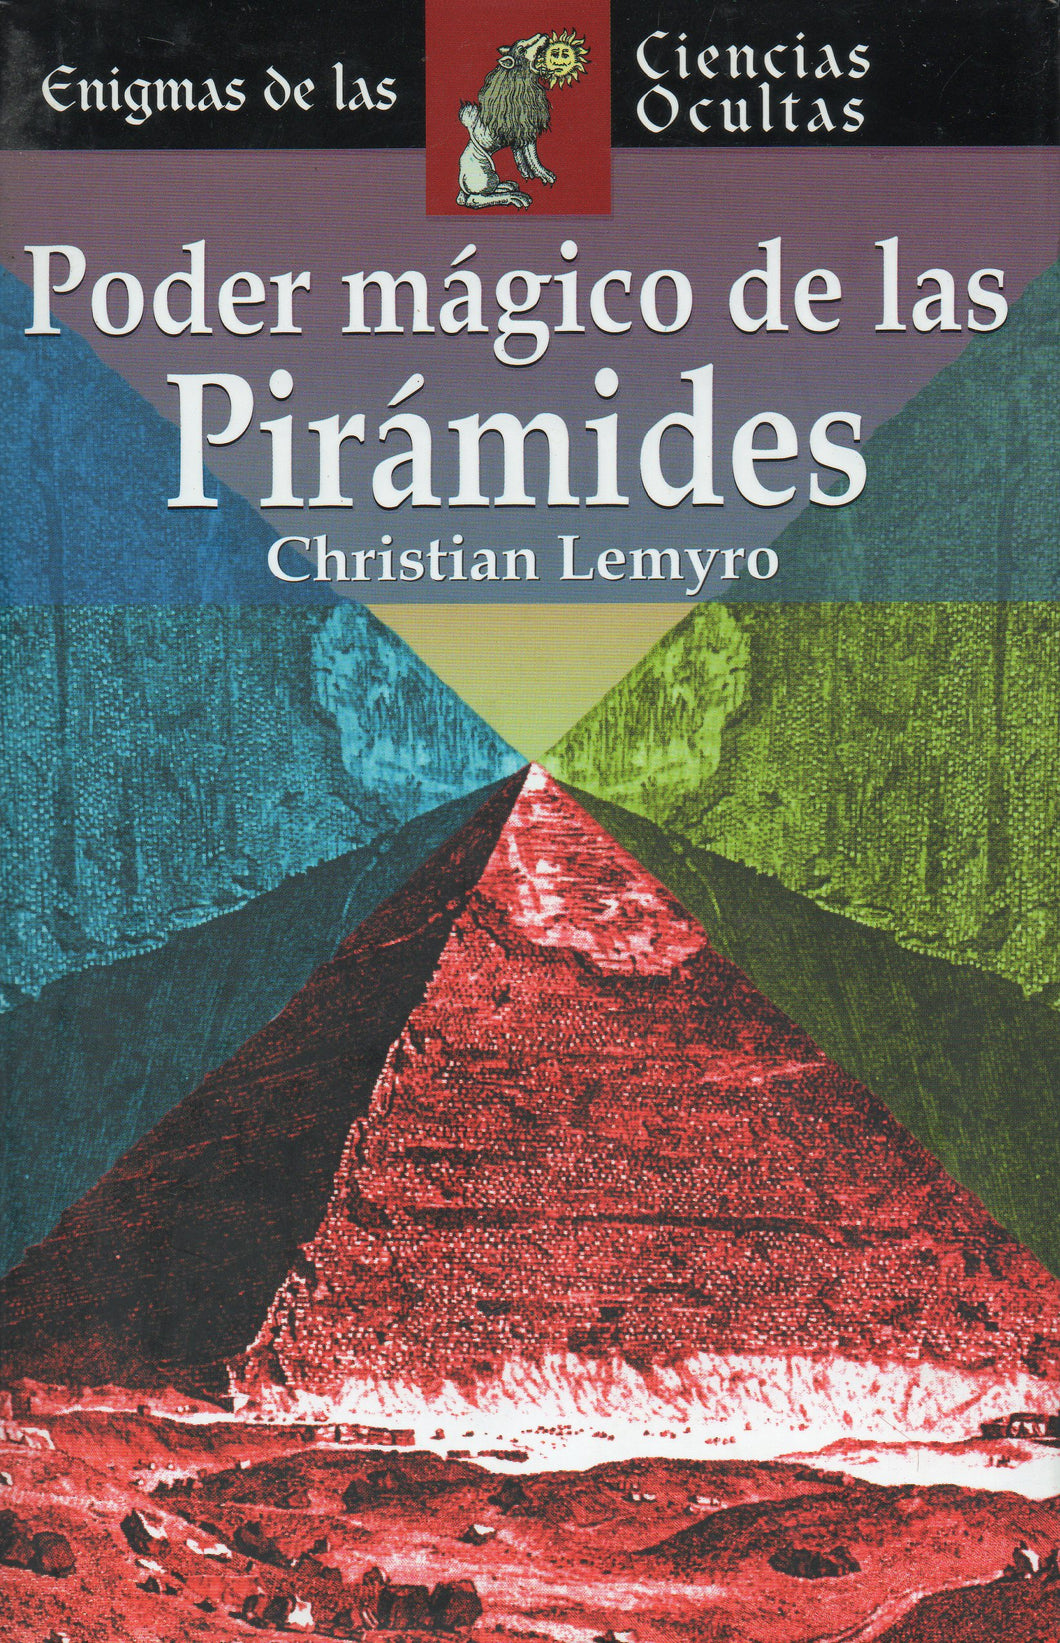 Poder mágico de las pirámides c-198 Christian Lemyro (libro tapa dura, de segunda mano muy bueno)